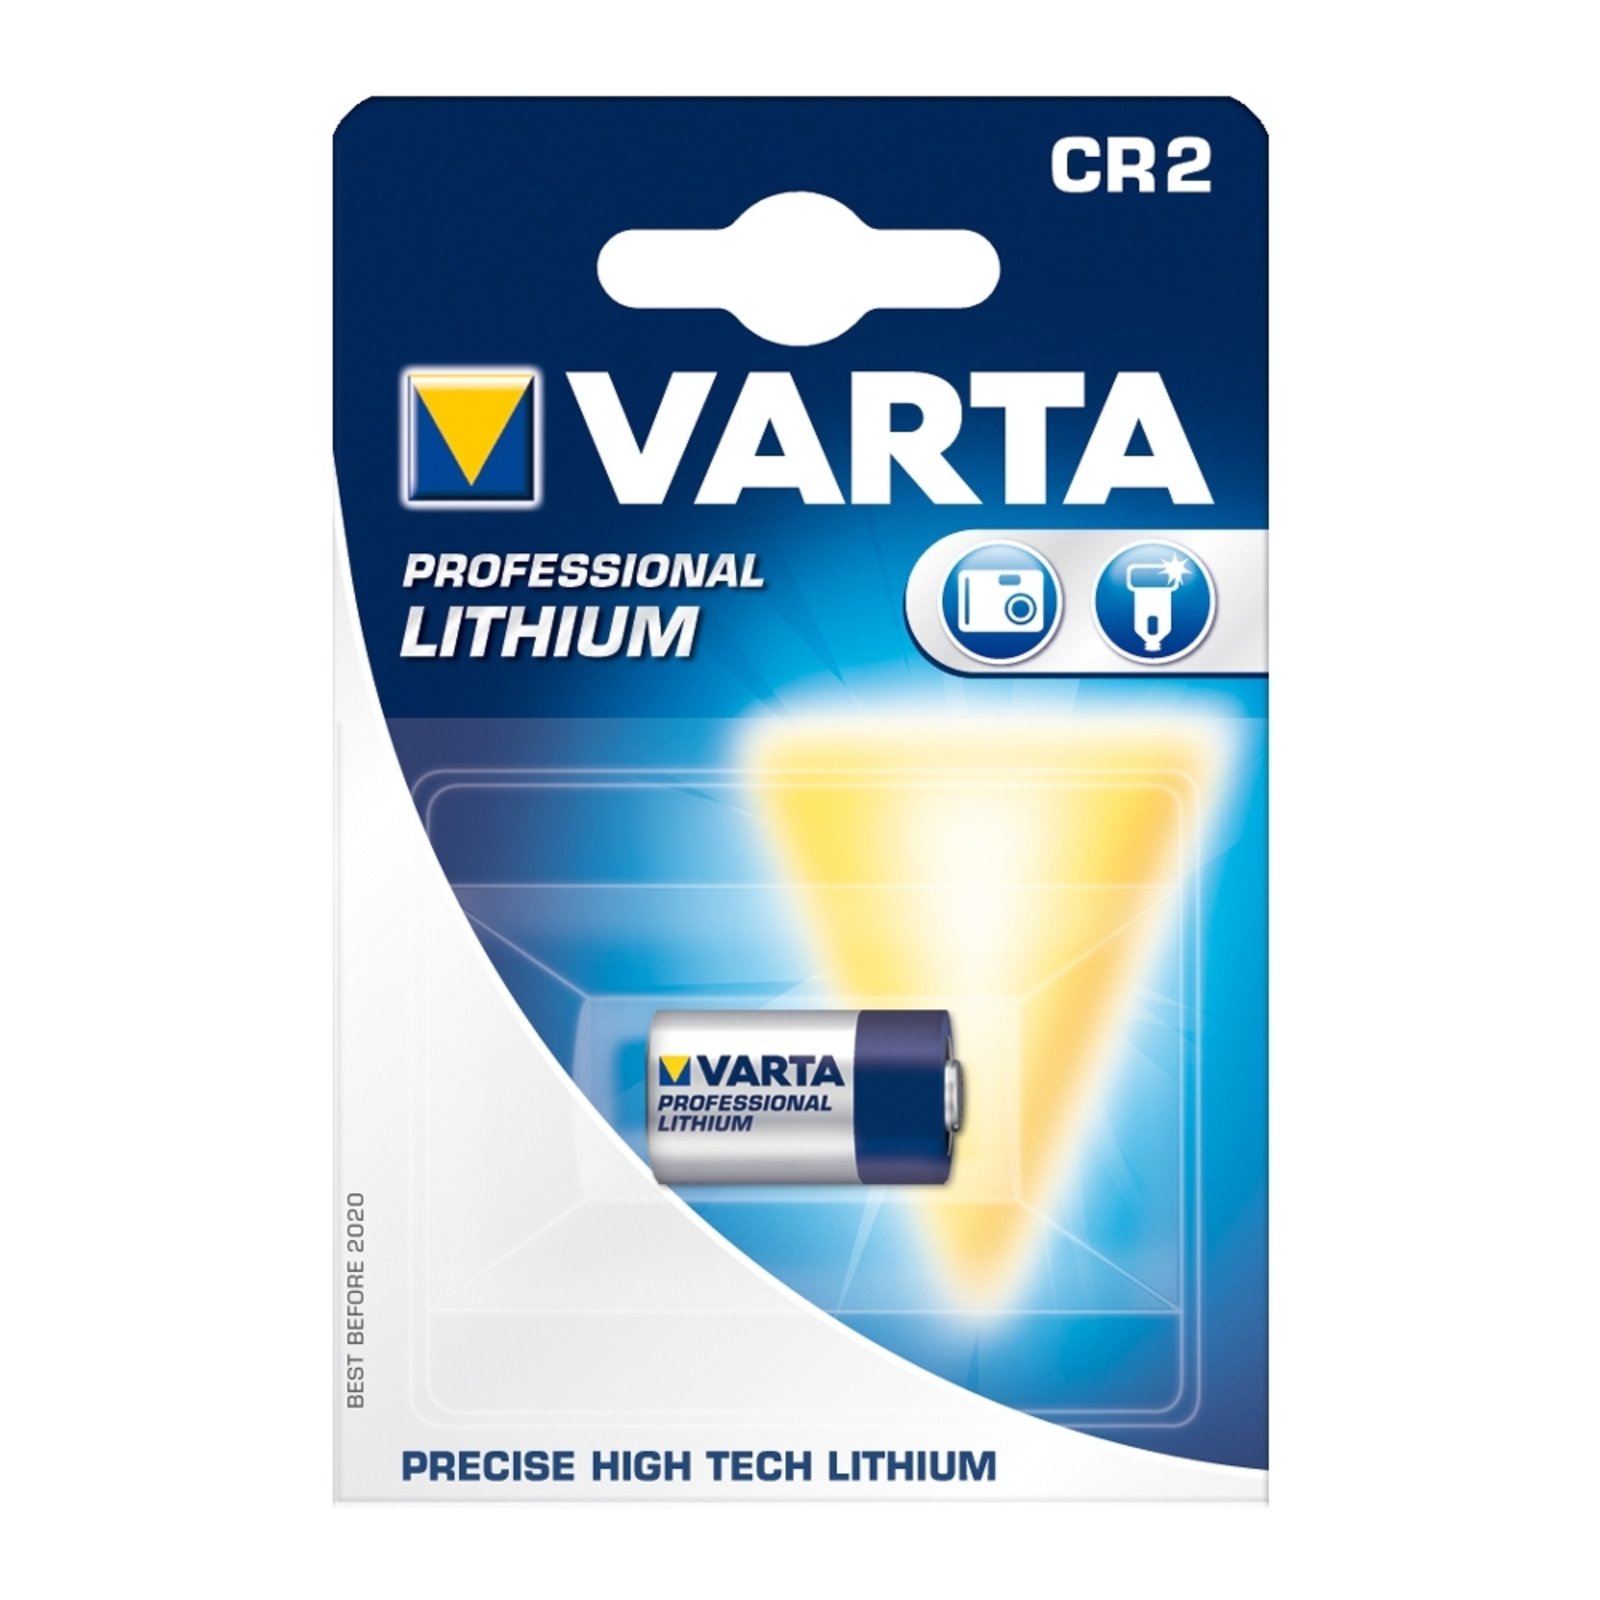 Litiumbatteri CR2 (6206) 3V från VARTA